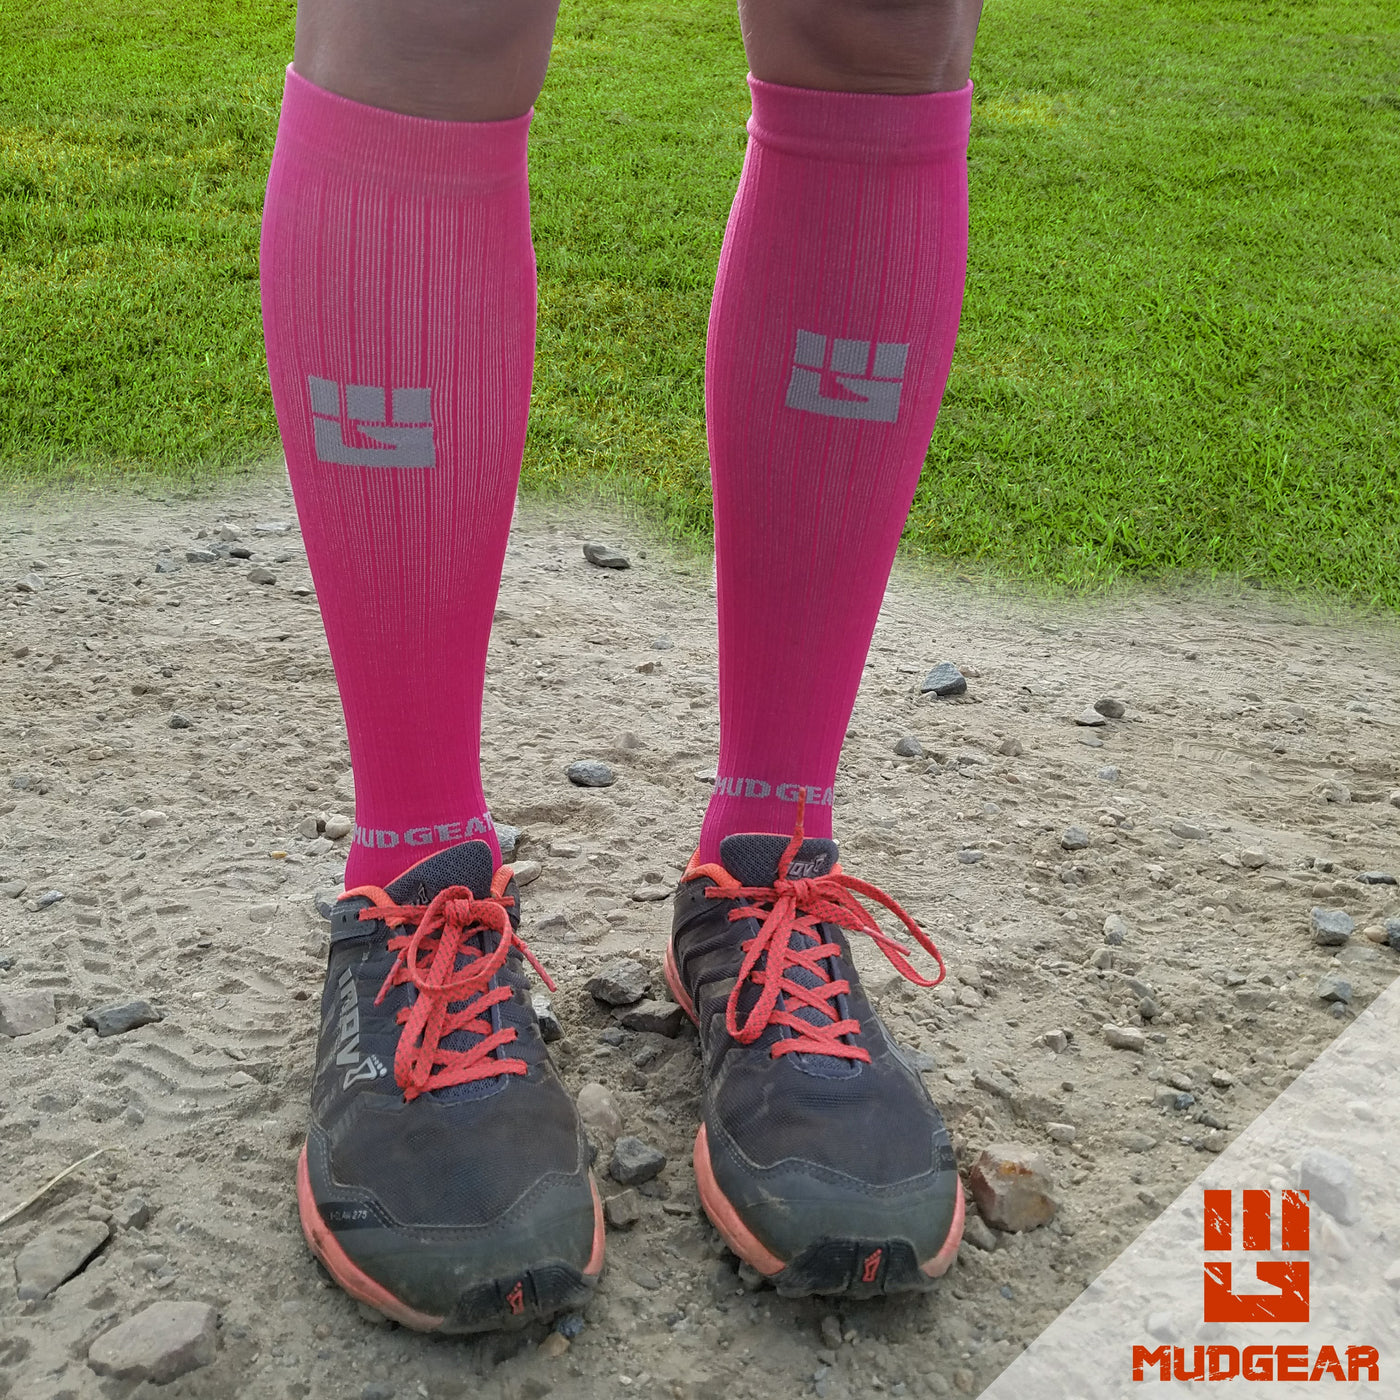 Tall Compression Socks (Pink/Gray)